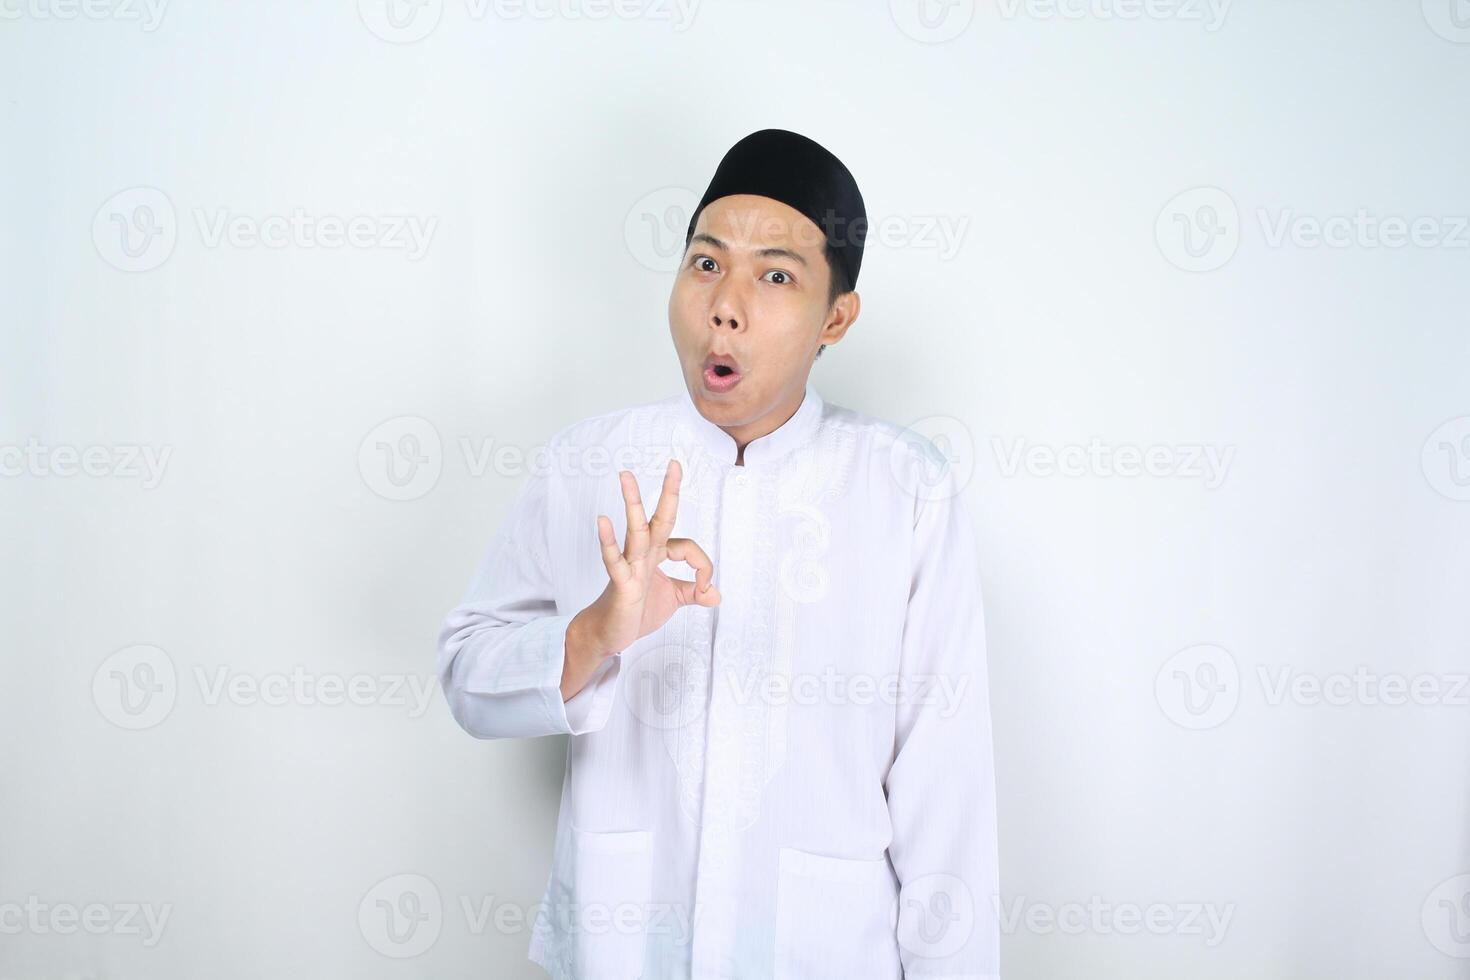 marrant musulman homme asiatique donner d'accord panneaux avec sous le choc expression isolé sur blanc Contexte photo